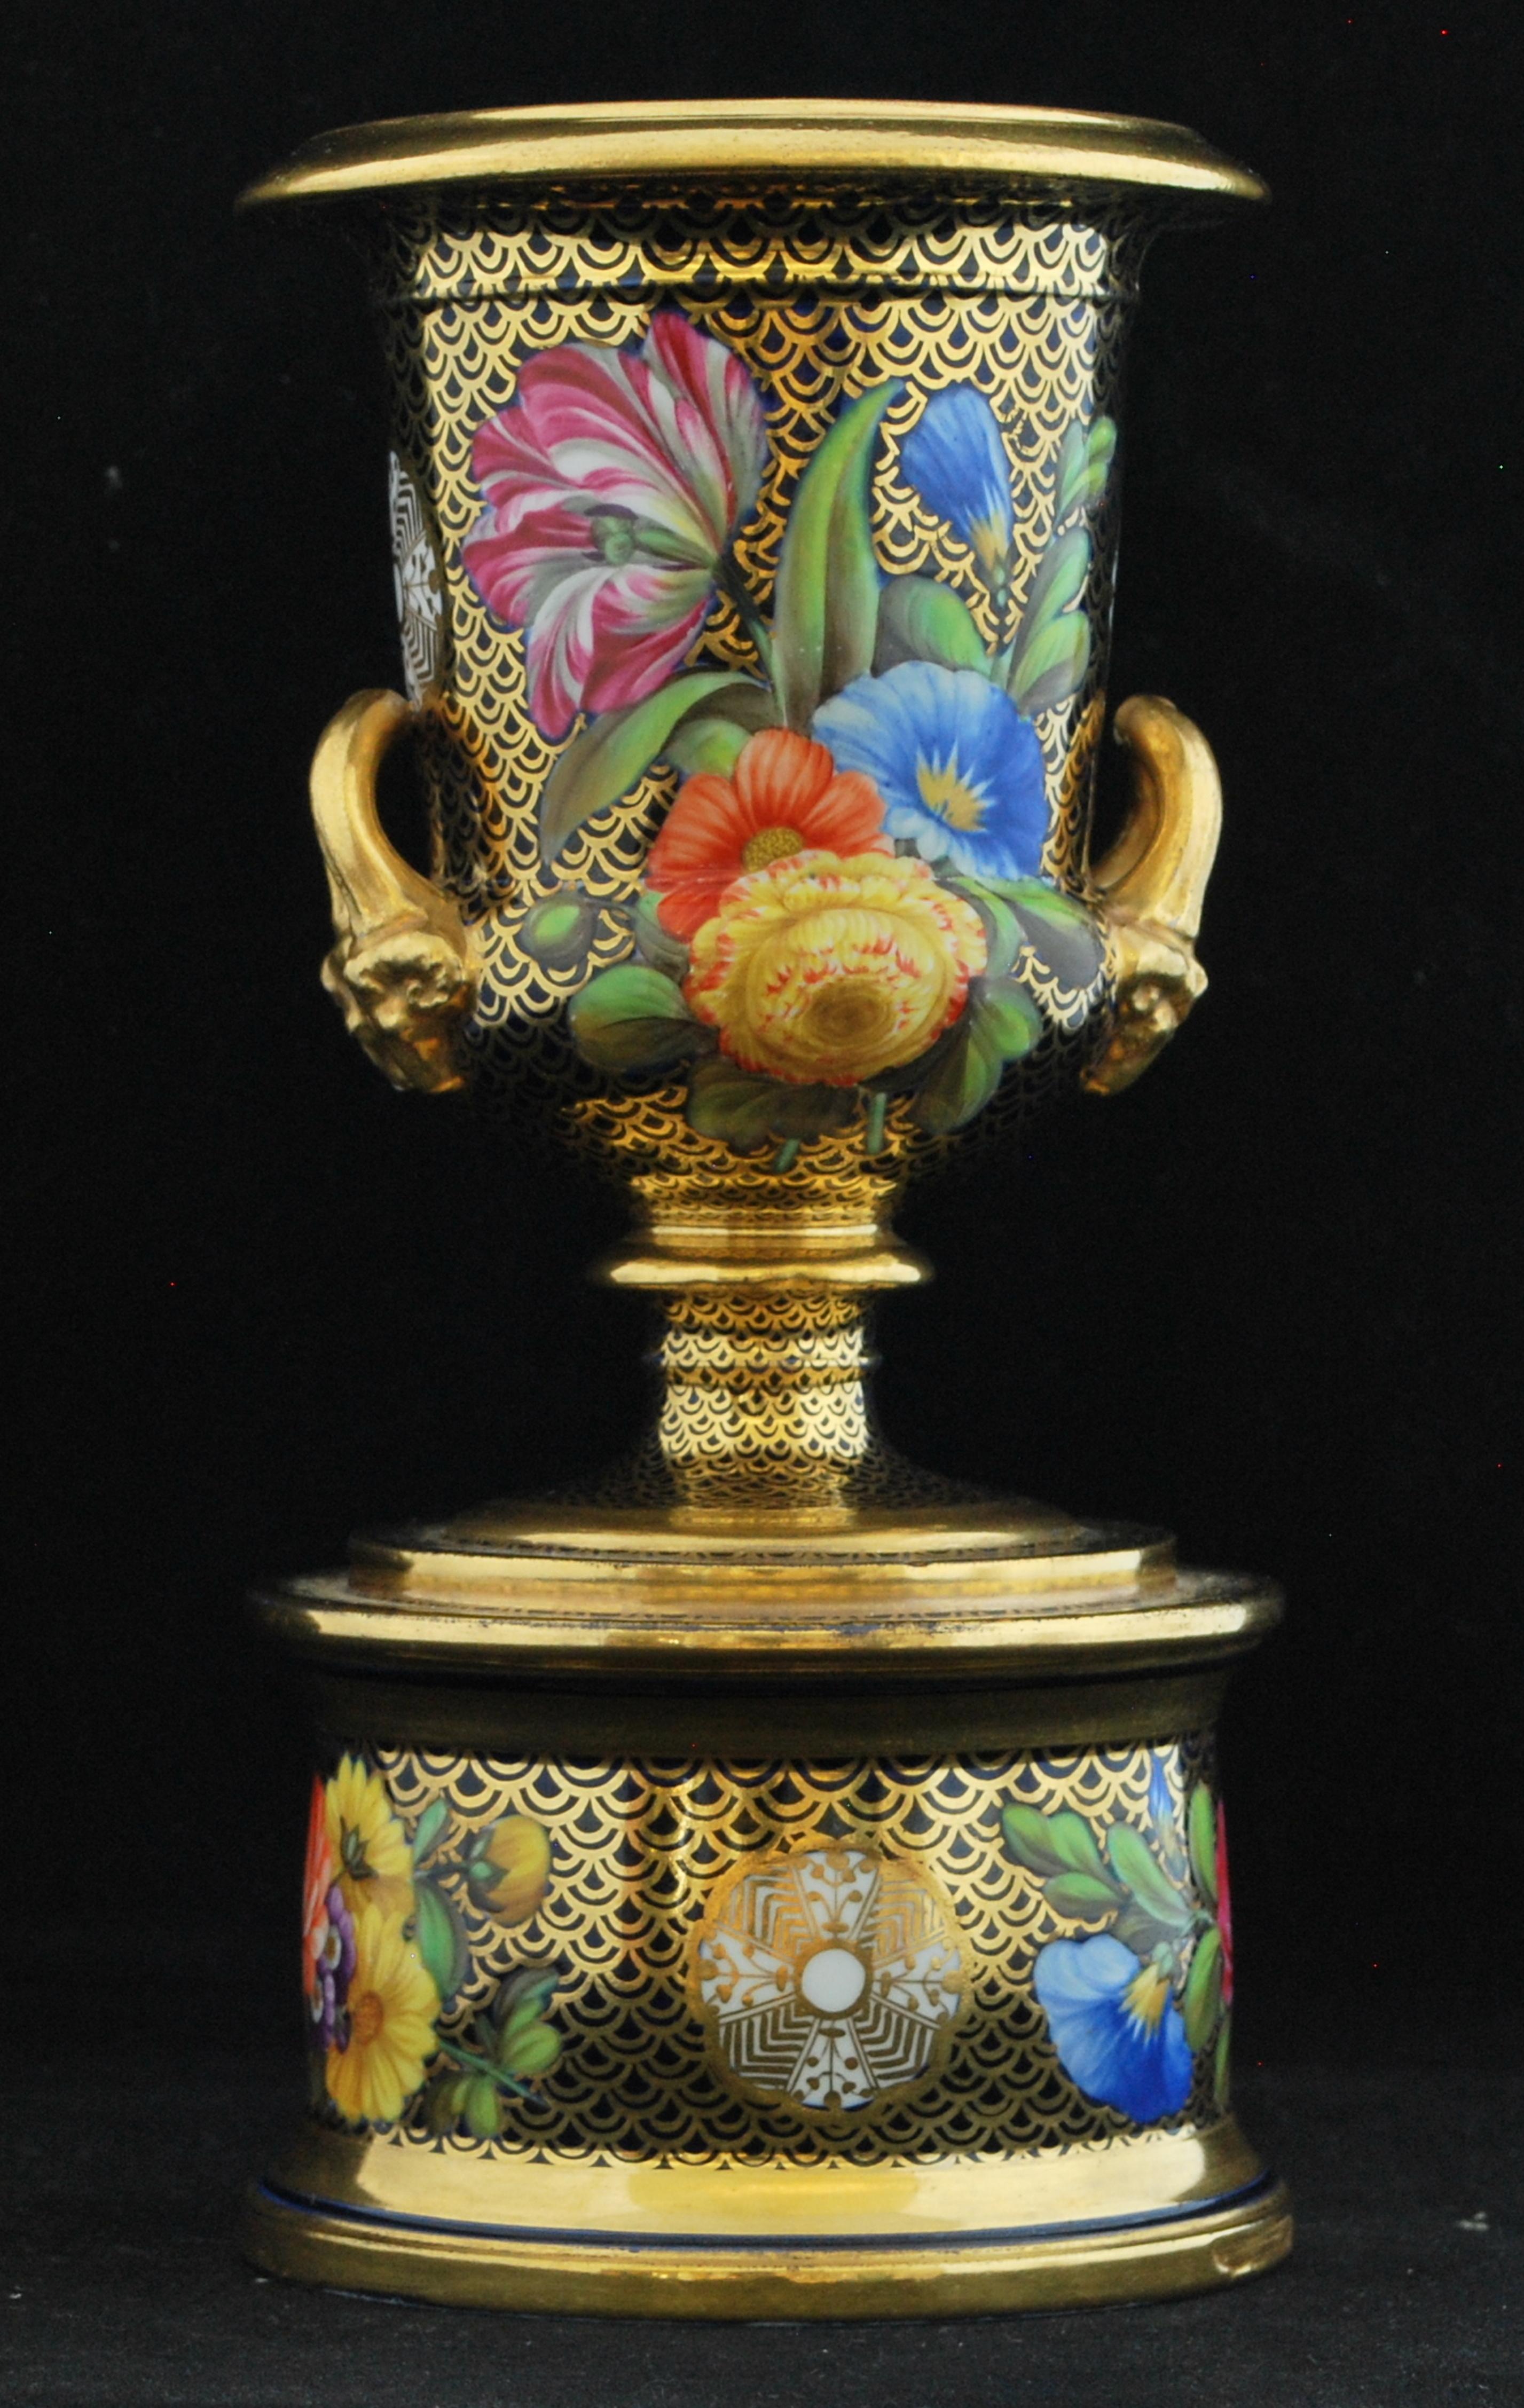 Le classique rencontre le régence : Un vase campana miniature, décoré du motif 1166. Ce motif, malgré sa popularité durable, n'a jamais reçu de nom commun, peut-être en raison du nombre de ses variations.

La peinture de fleurs est superbe, même